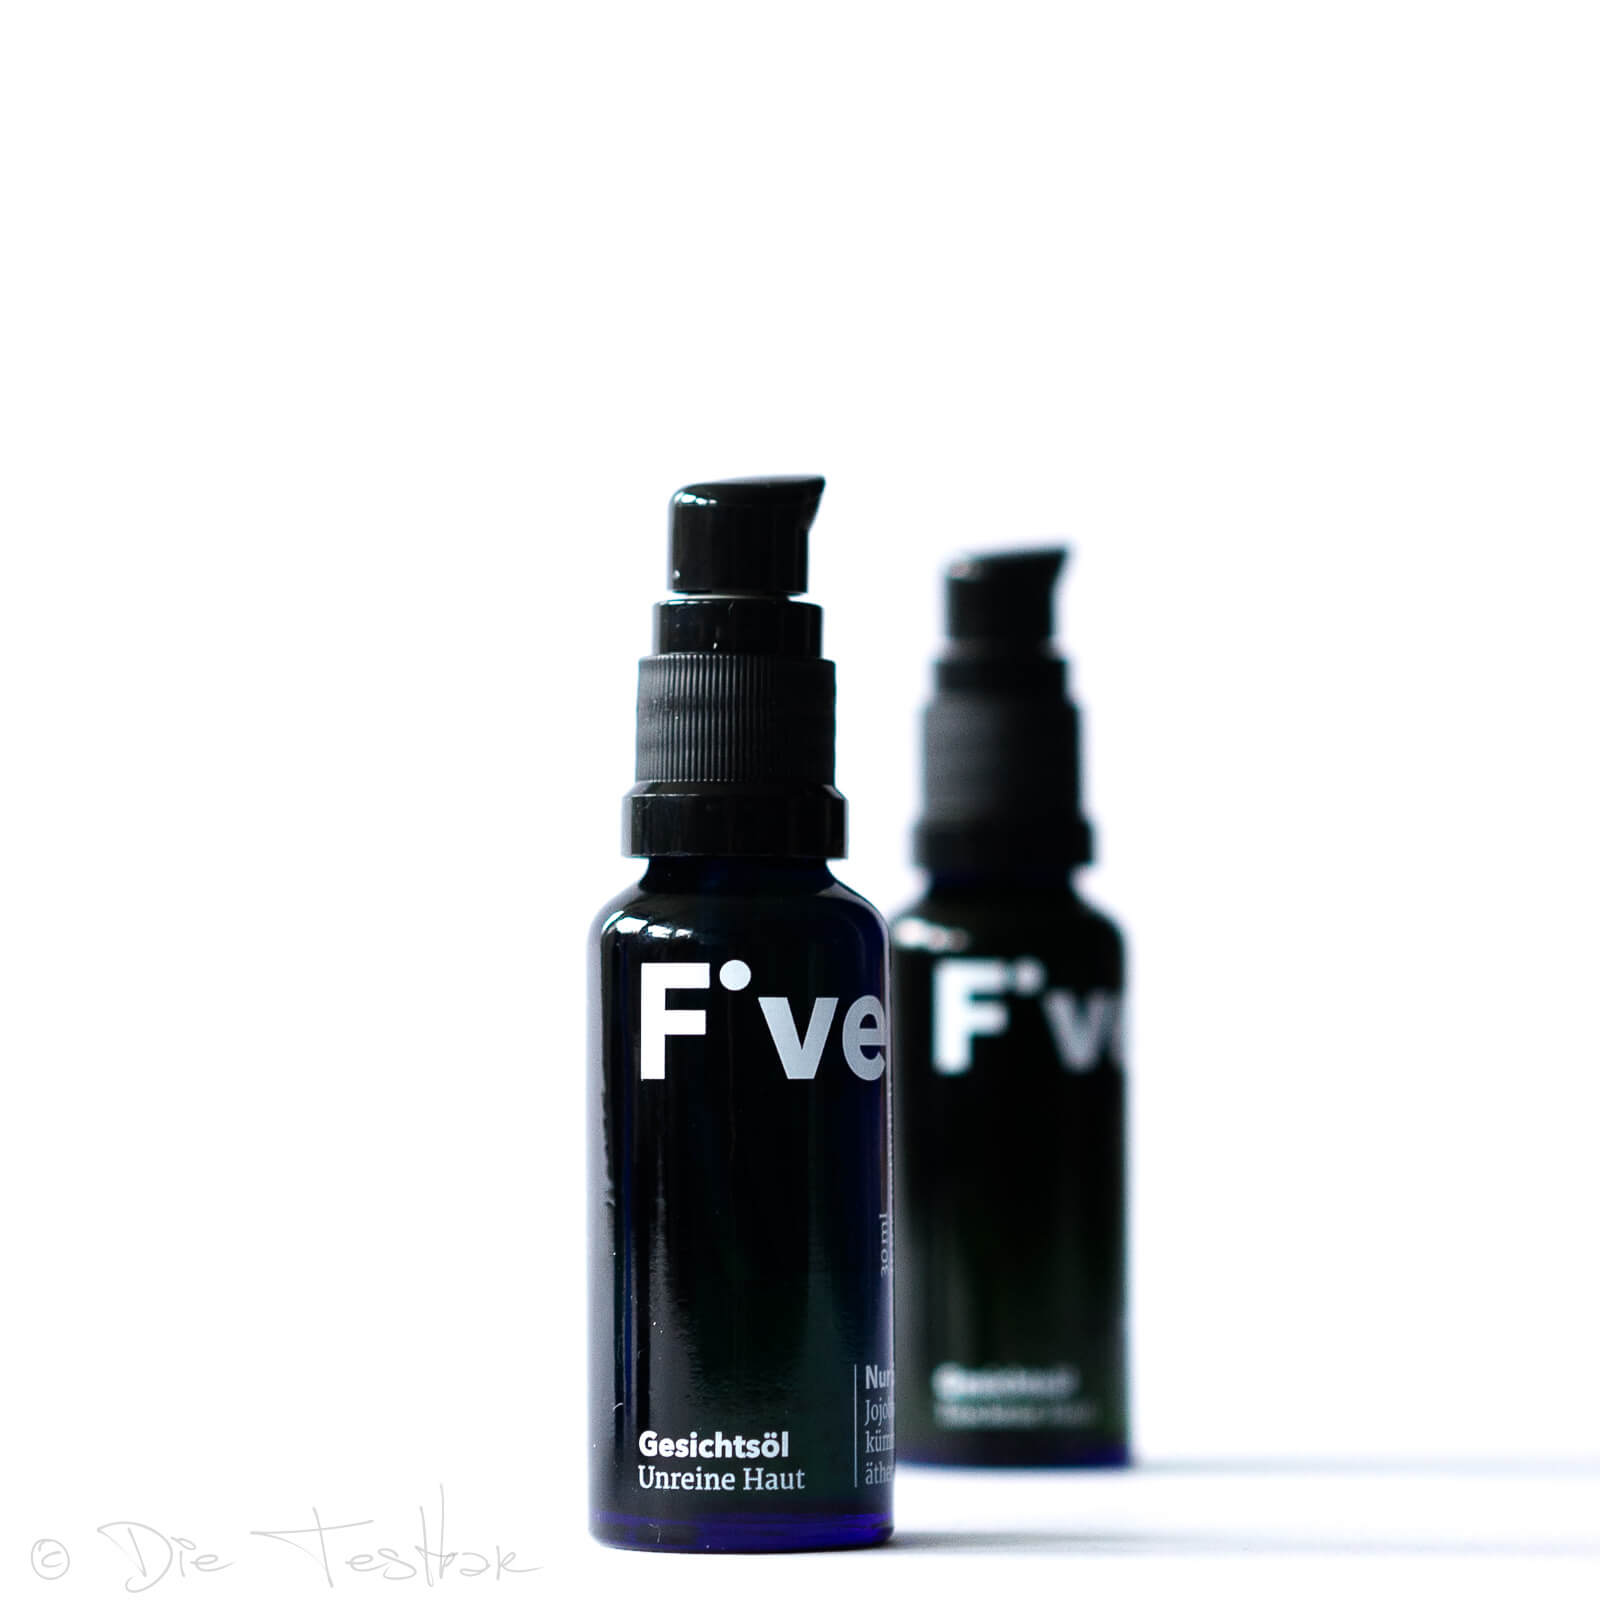 FIVE Gesichtsöl – Unreine Haut